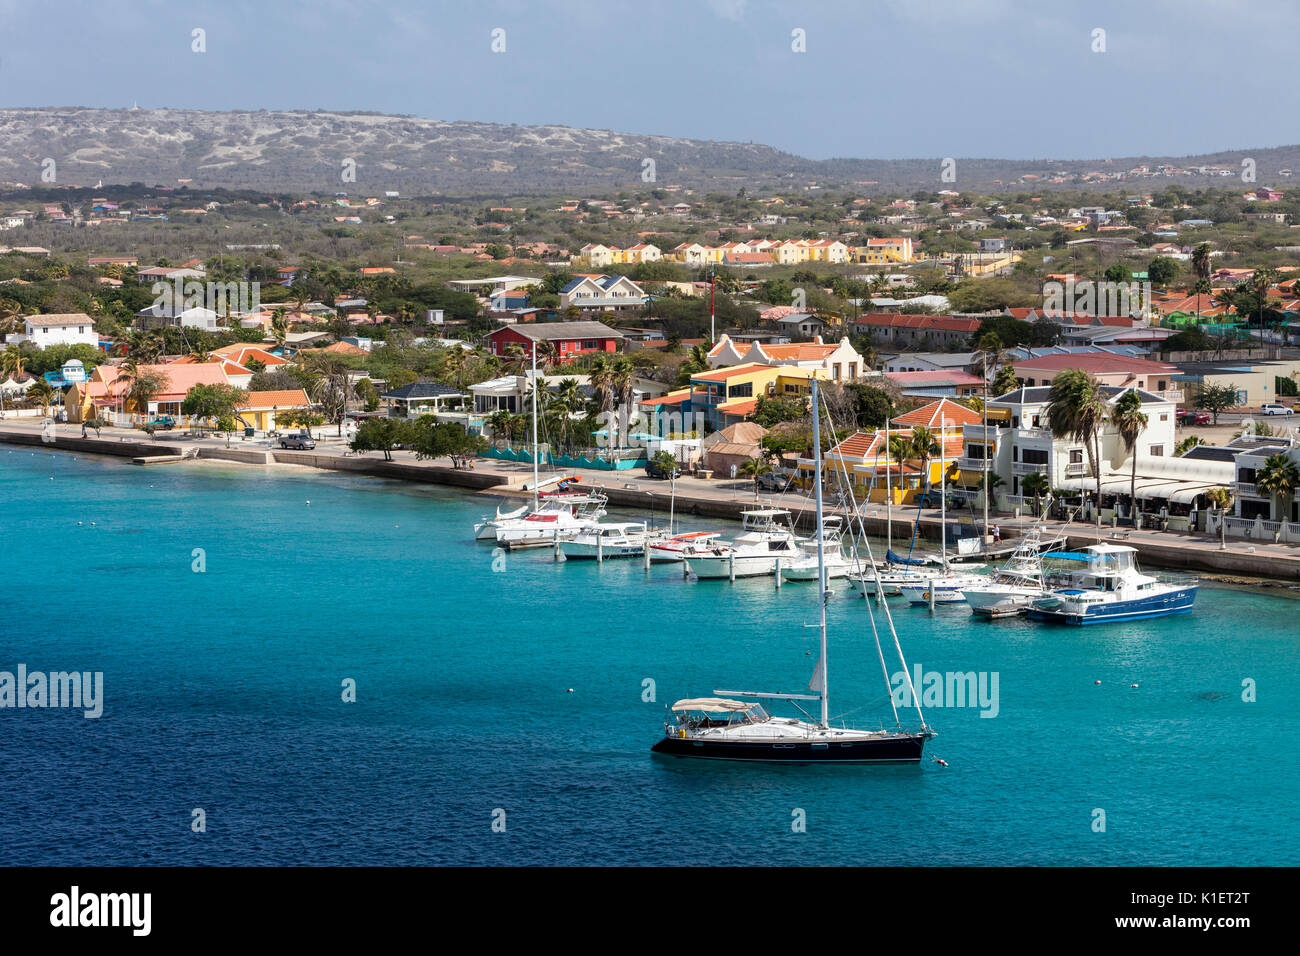 Kralendijk, Bonaire, Antille sottovento. Foto Stock